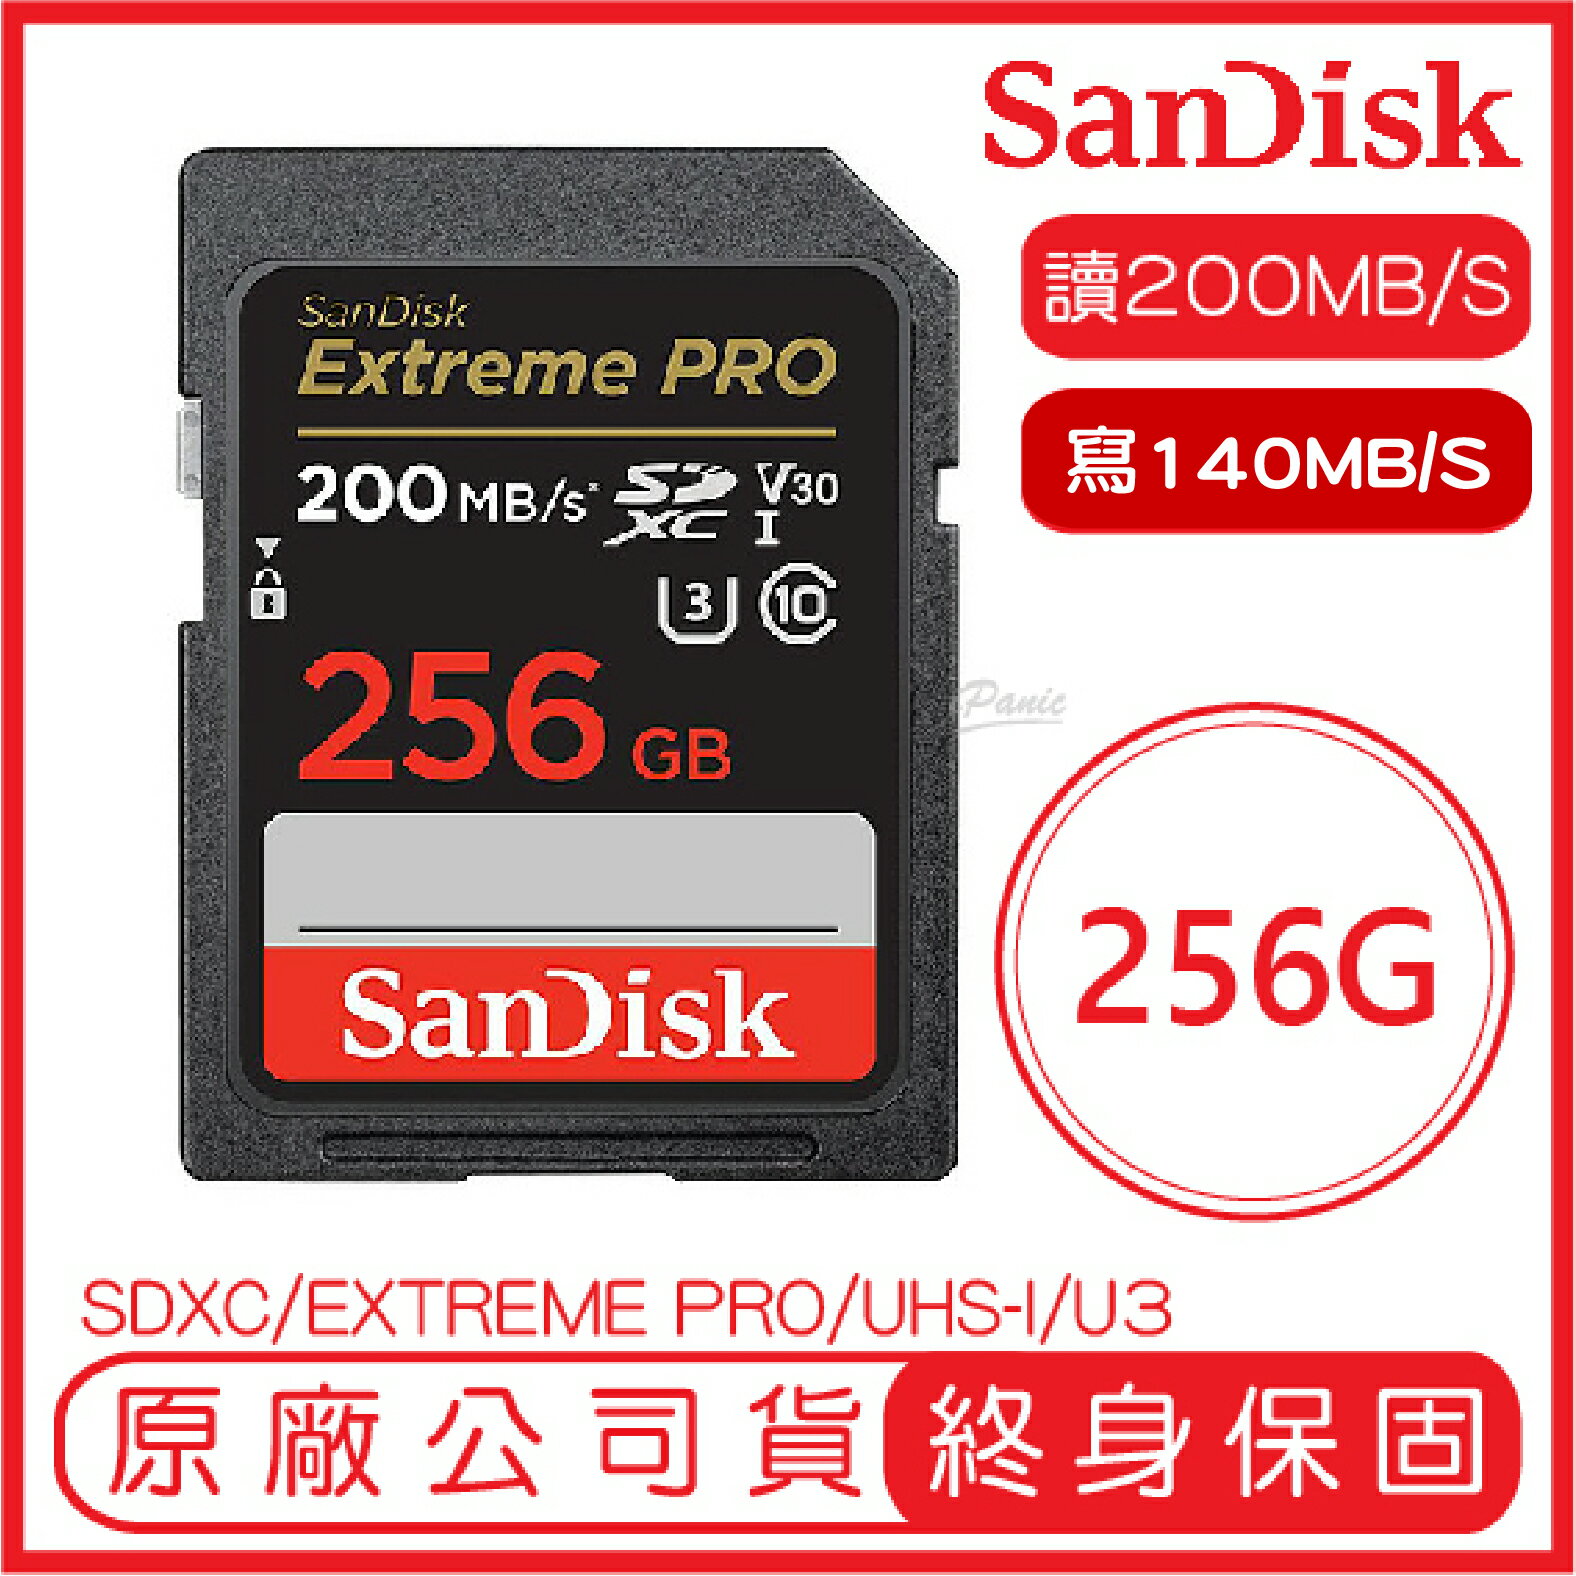 【9%點數】SanDisk 256G Extreme Pro SDXC UHS-I V30 記憶卡 讀200M 寫140M 256GB【APP下單9%點數回饋】【限定樂天APP下單】